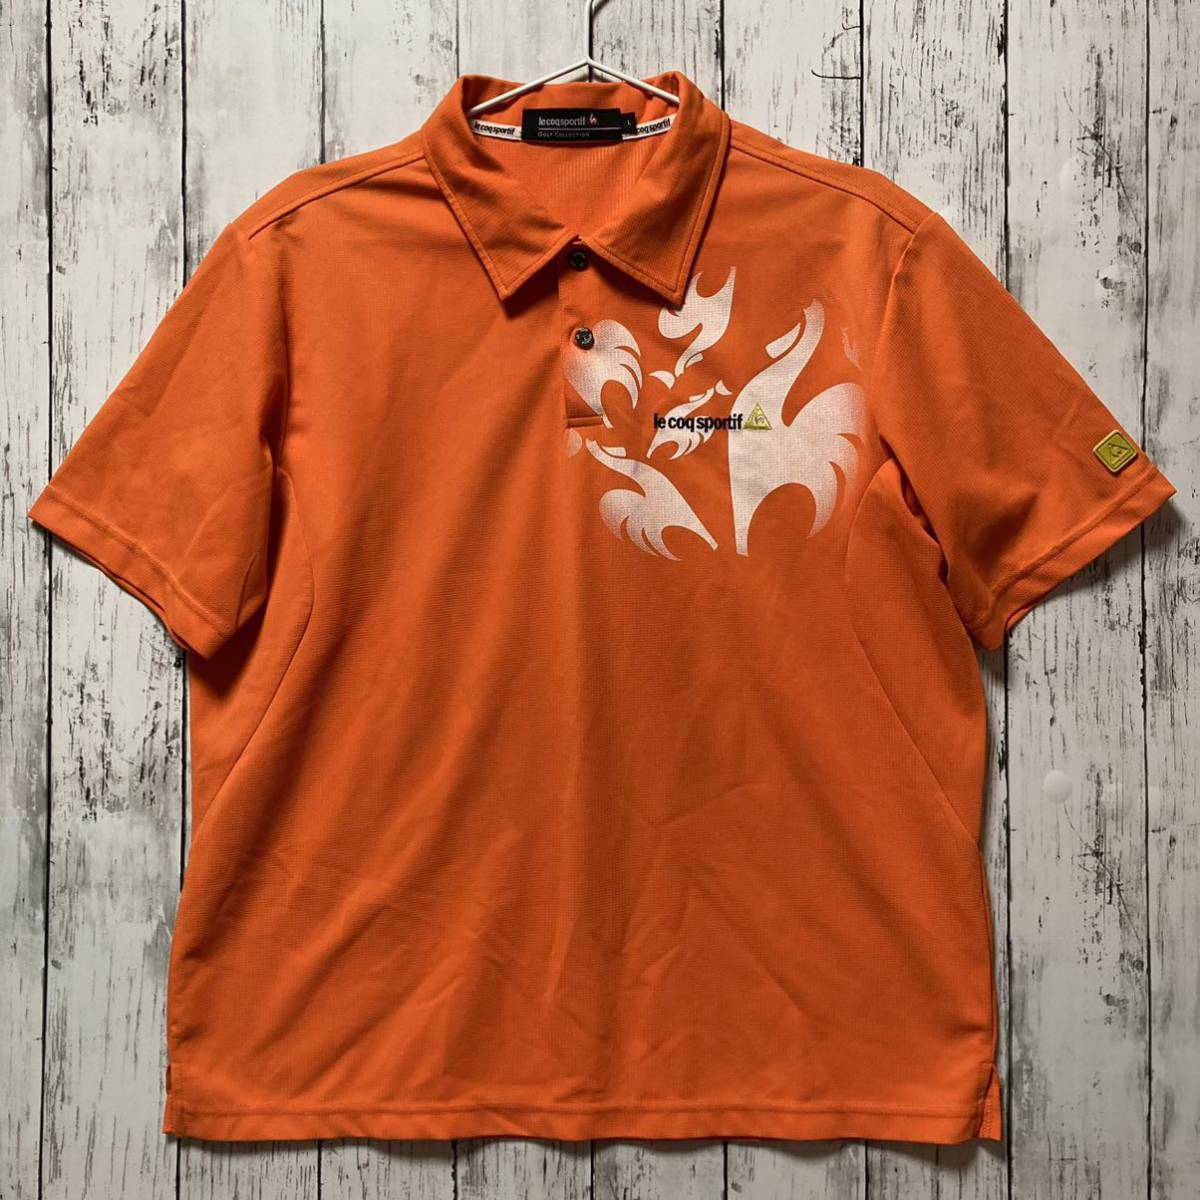 【le coq GOLF】ルコックゴルフ メンズ 半袖ポロシャツ Lサイズ オレンジ 身幅ゆったり_画像1